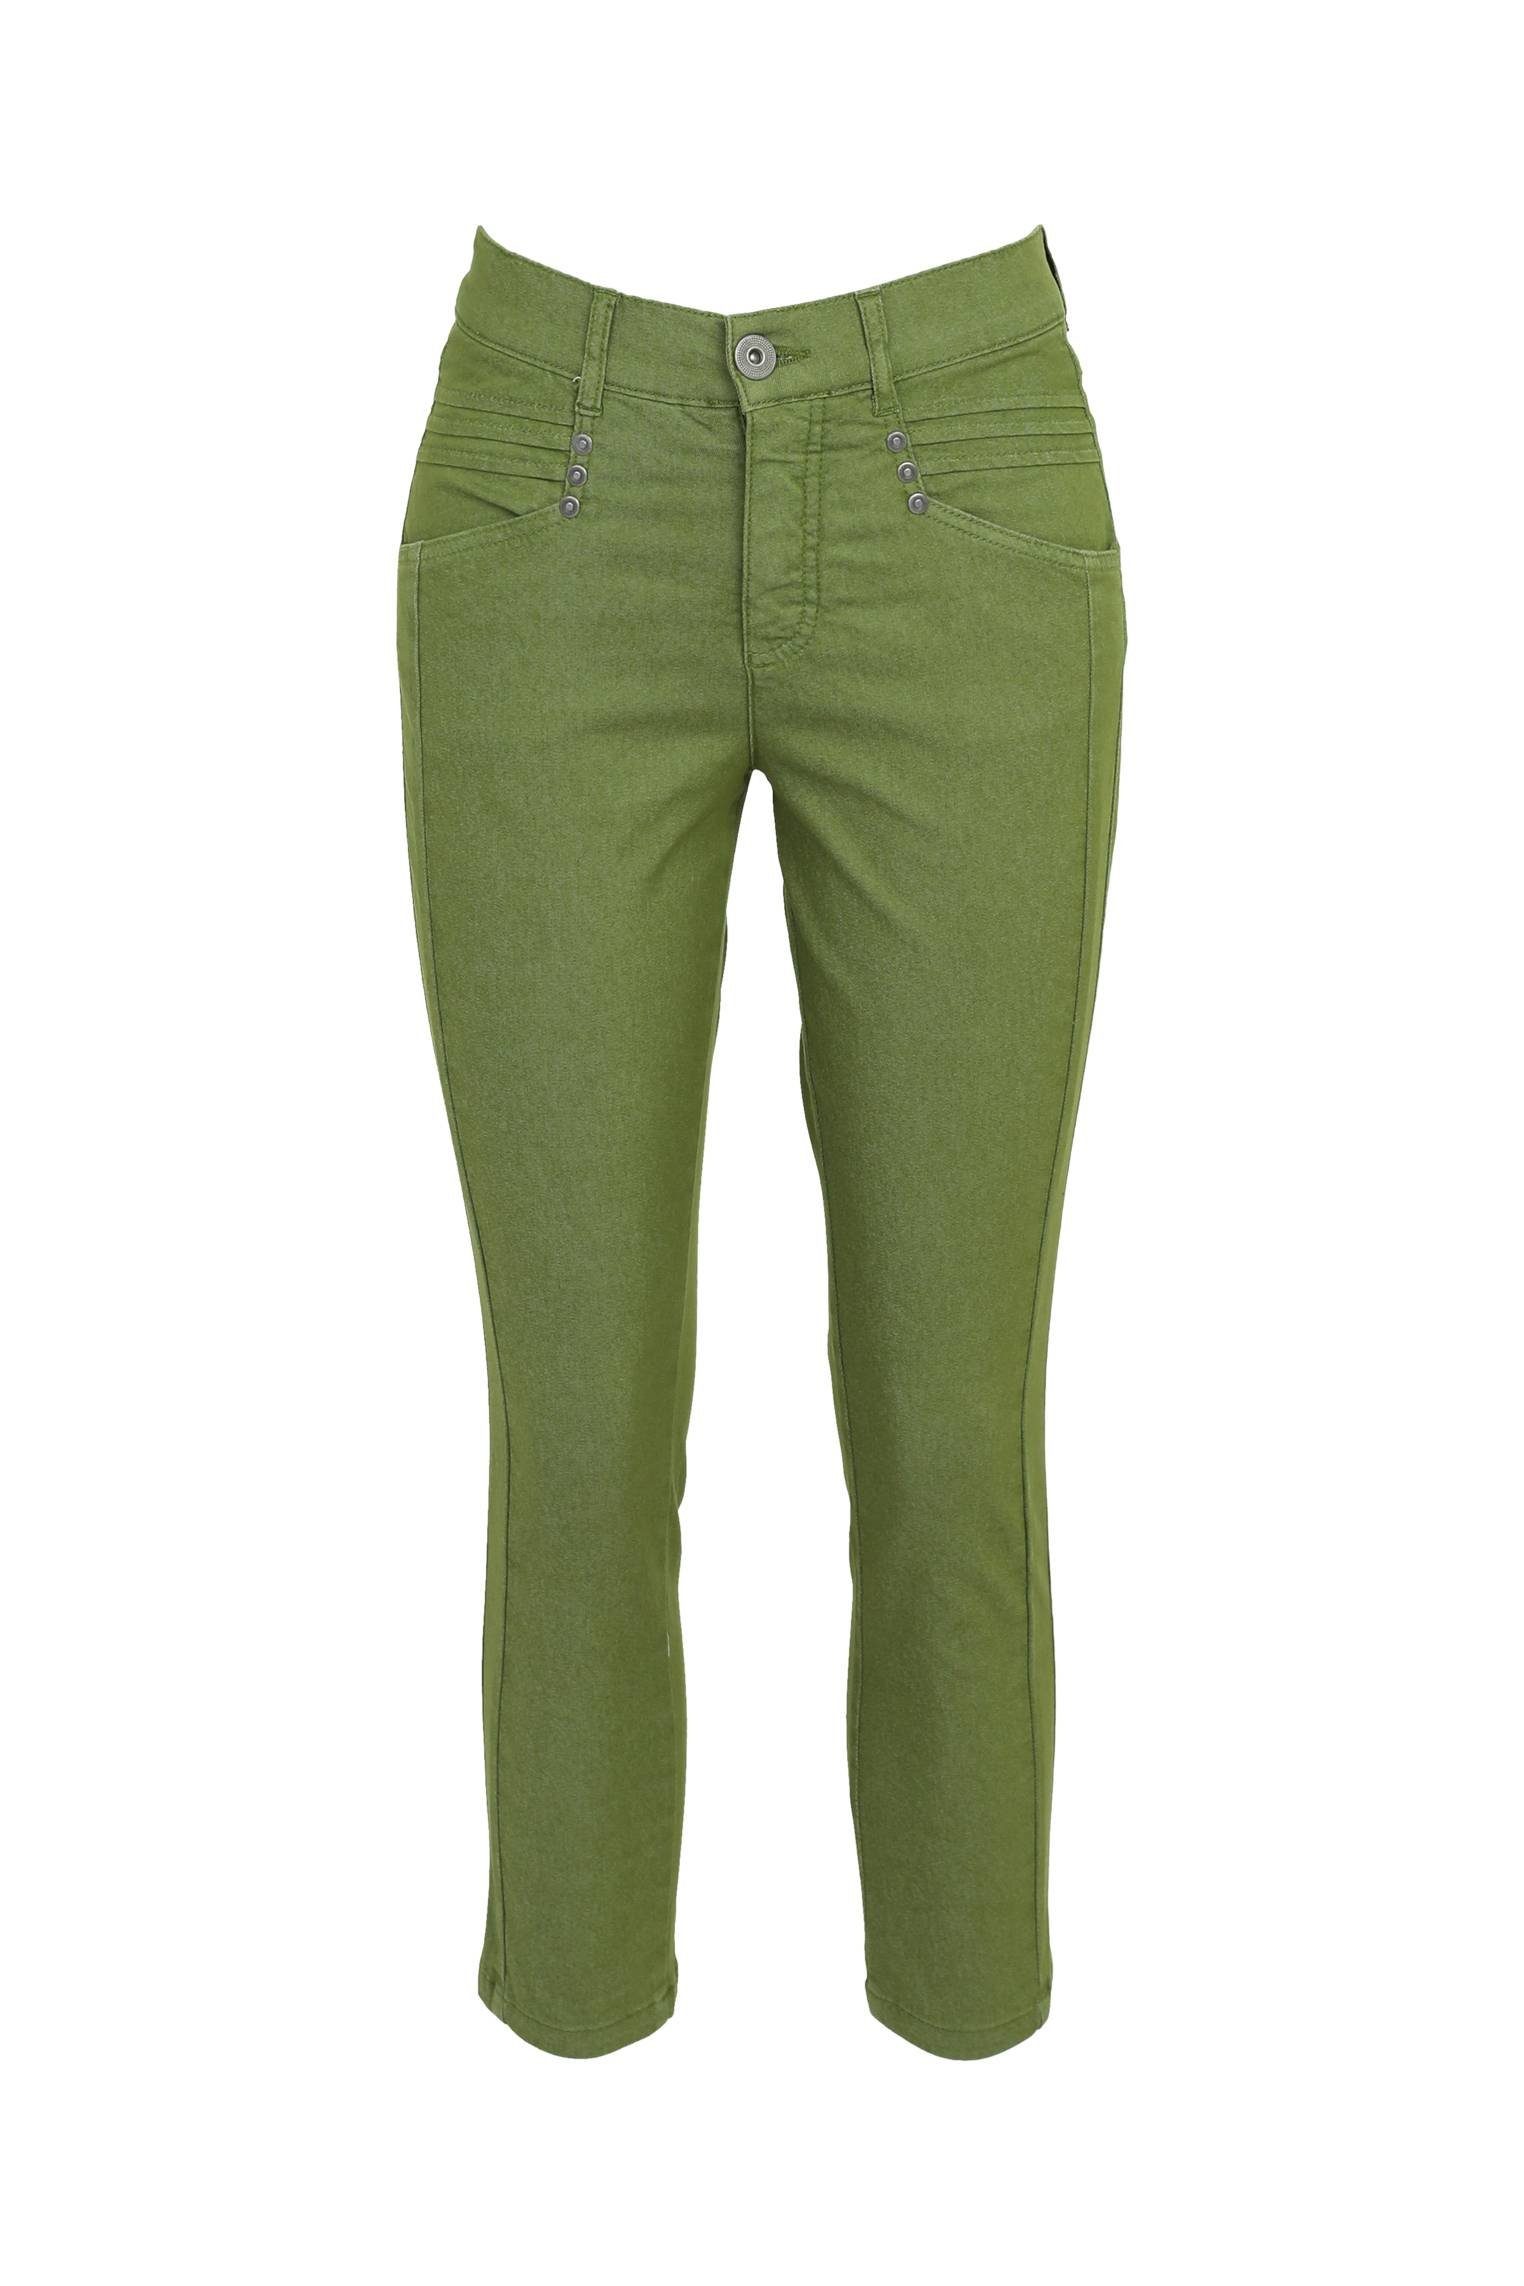 Und Cassis 5-Pocket-Jeans Faltendetail Mit Taschen 5 Slim-Fit-7/8-Jeans